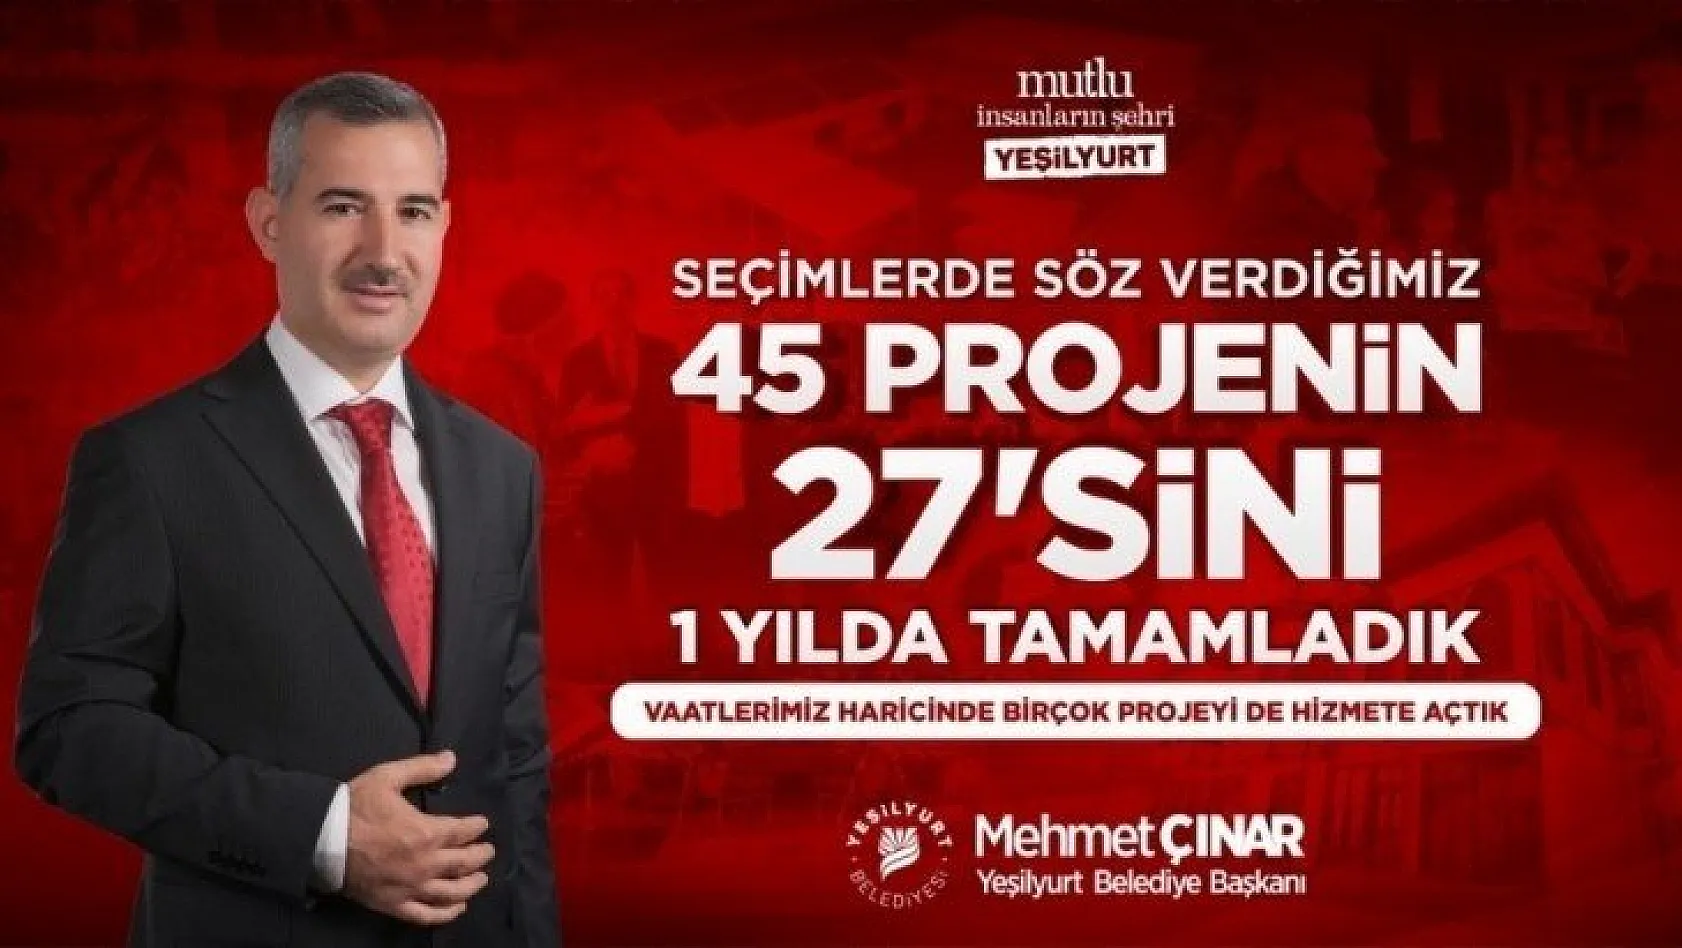 Belediye Başkanı Çınar 45 projeden 27'sini bir yılda yaptıklarını bildirdi